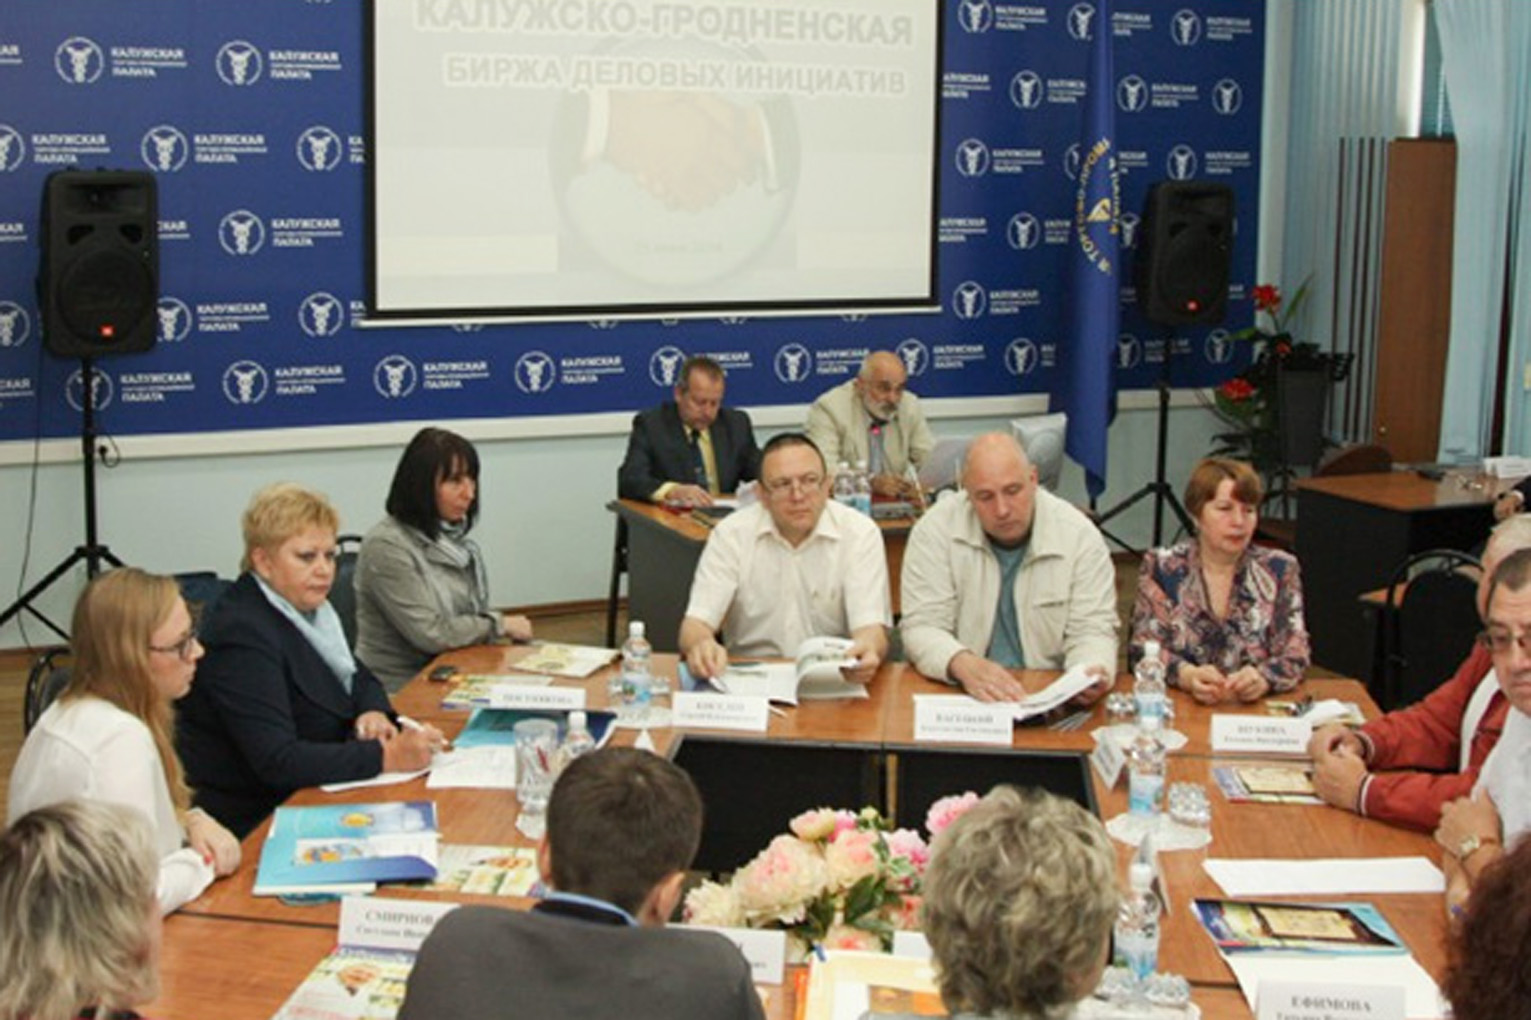 Визит делегации белорусских деловых кругов в Калугу